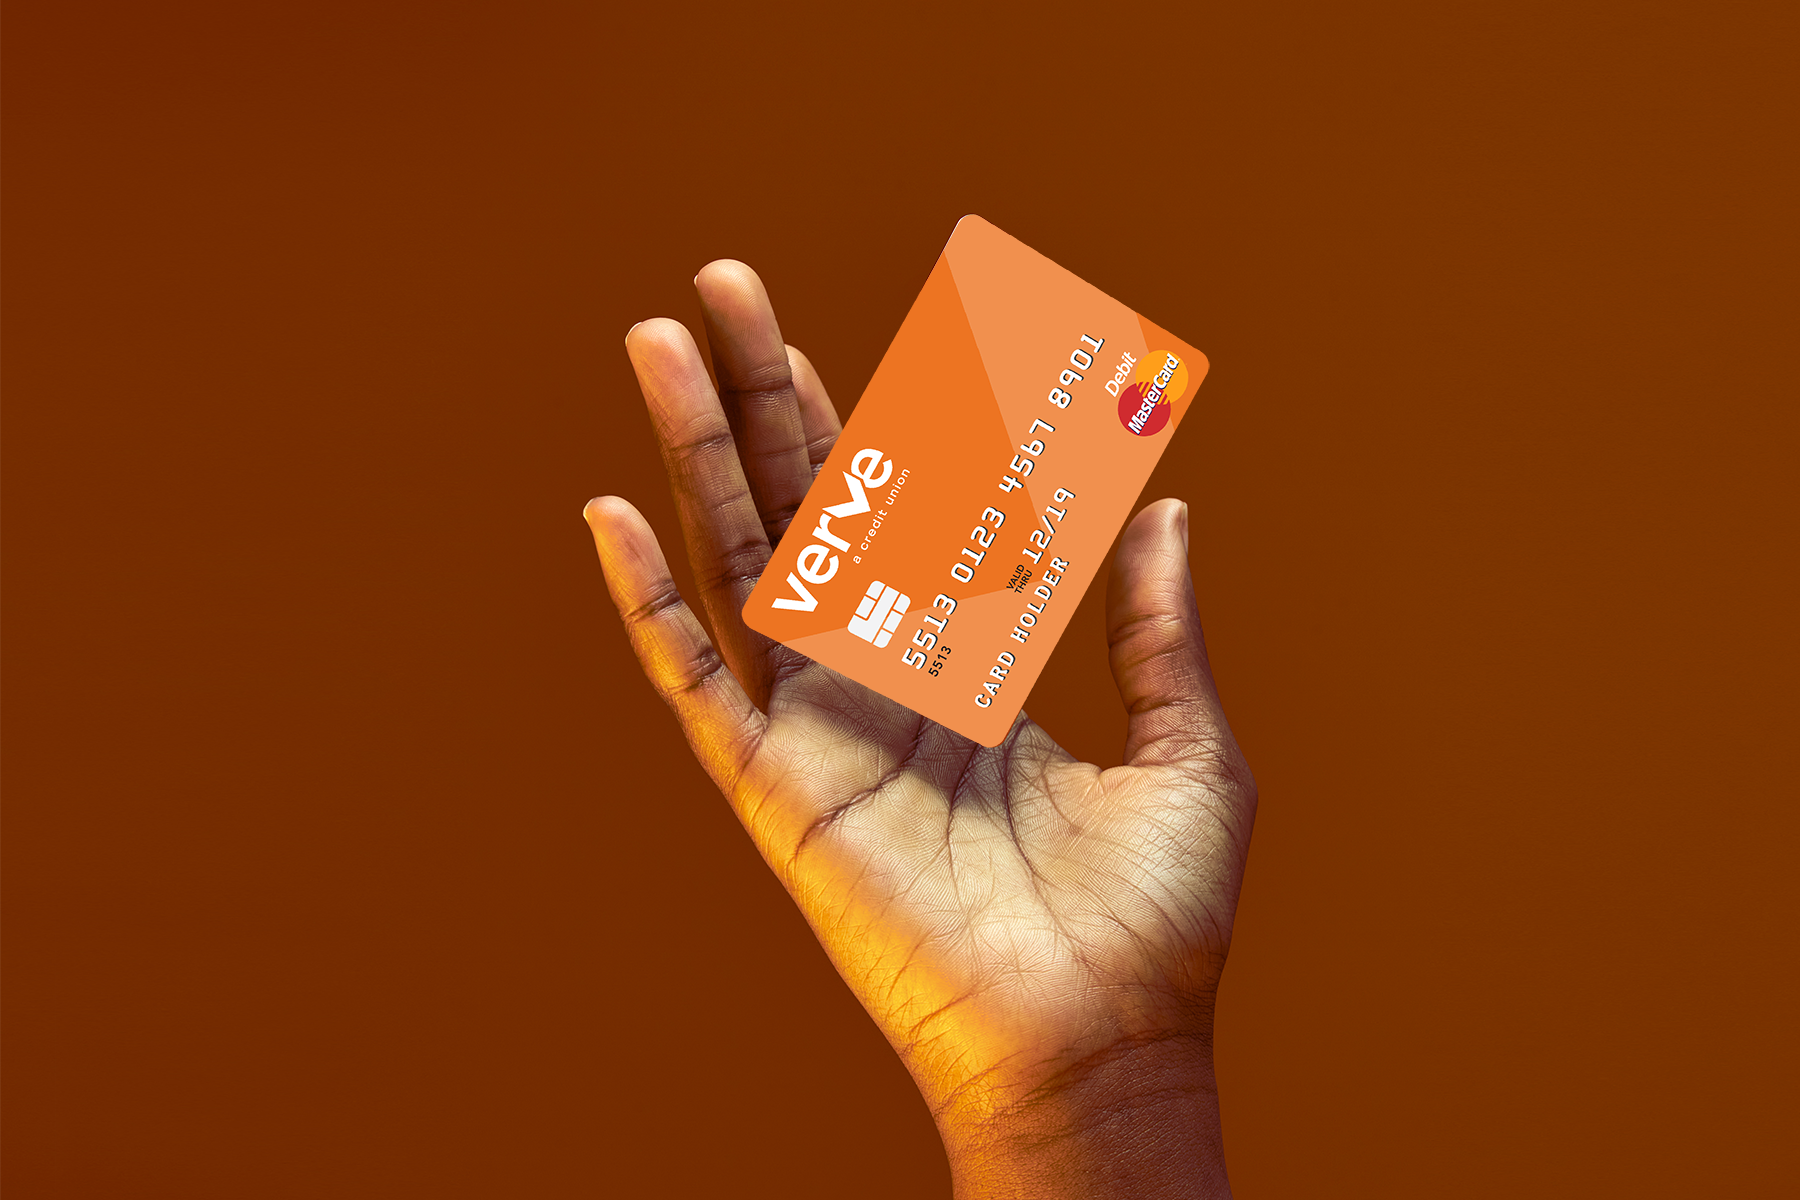 Hand holding orange Verve debit card on dark orange background